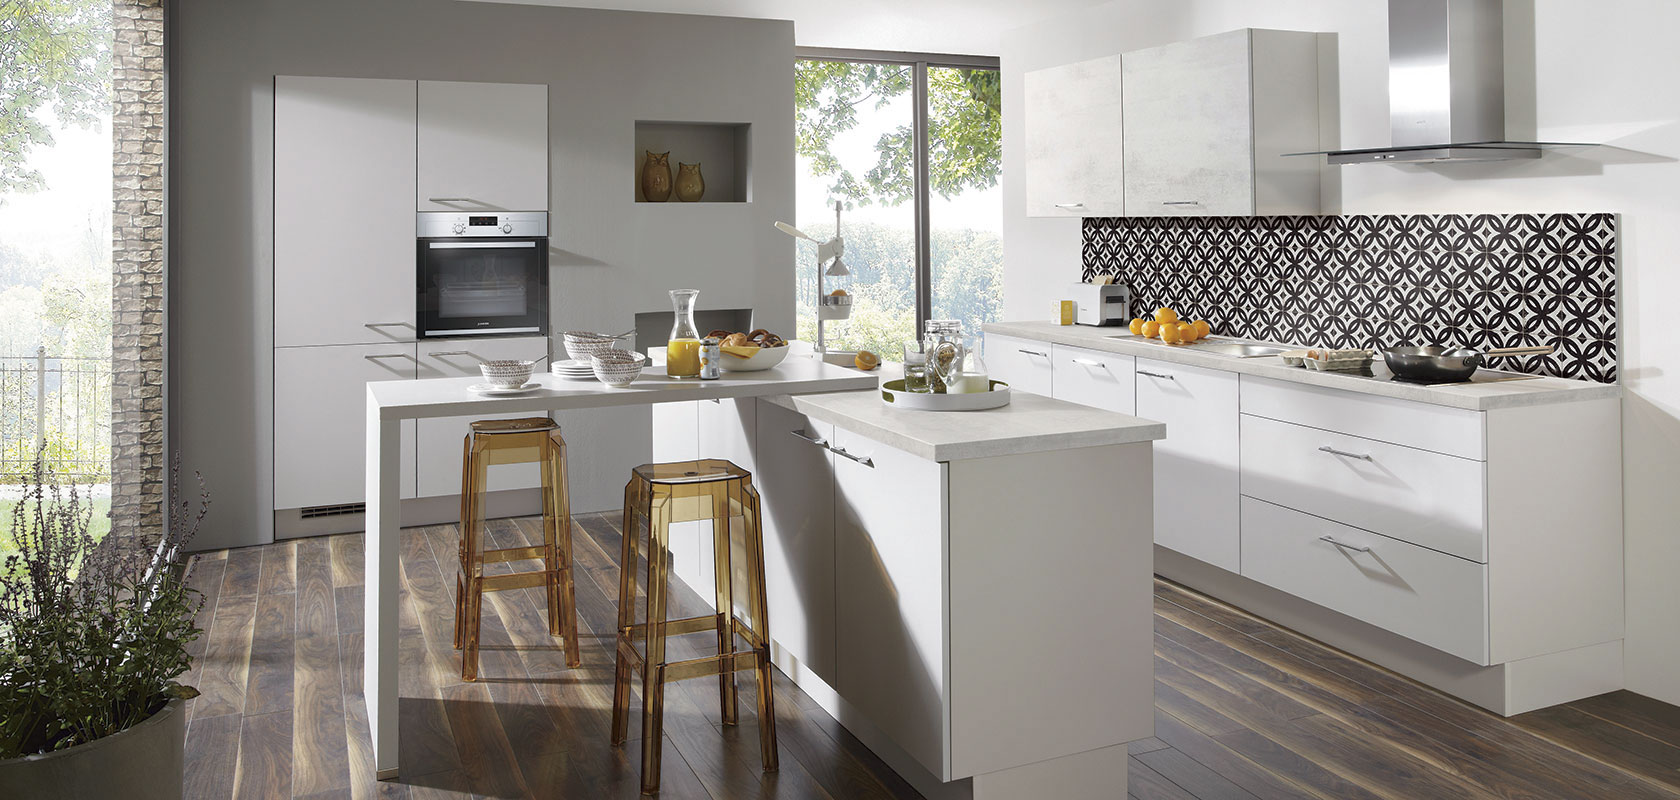 Die Küchentheke kann je nach Wunsch ausgestattet werden. Sie kann als freistehende Kochinsel mit integrierter Herdplatte fungieren.